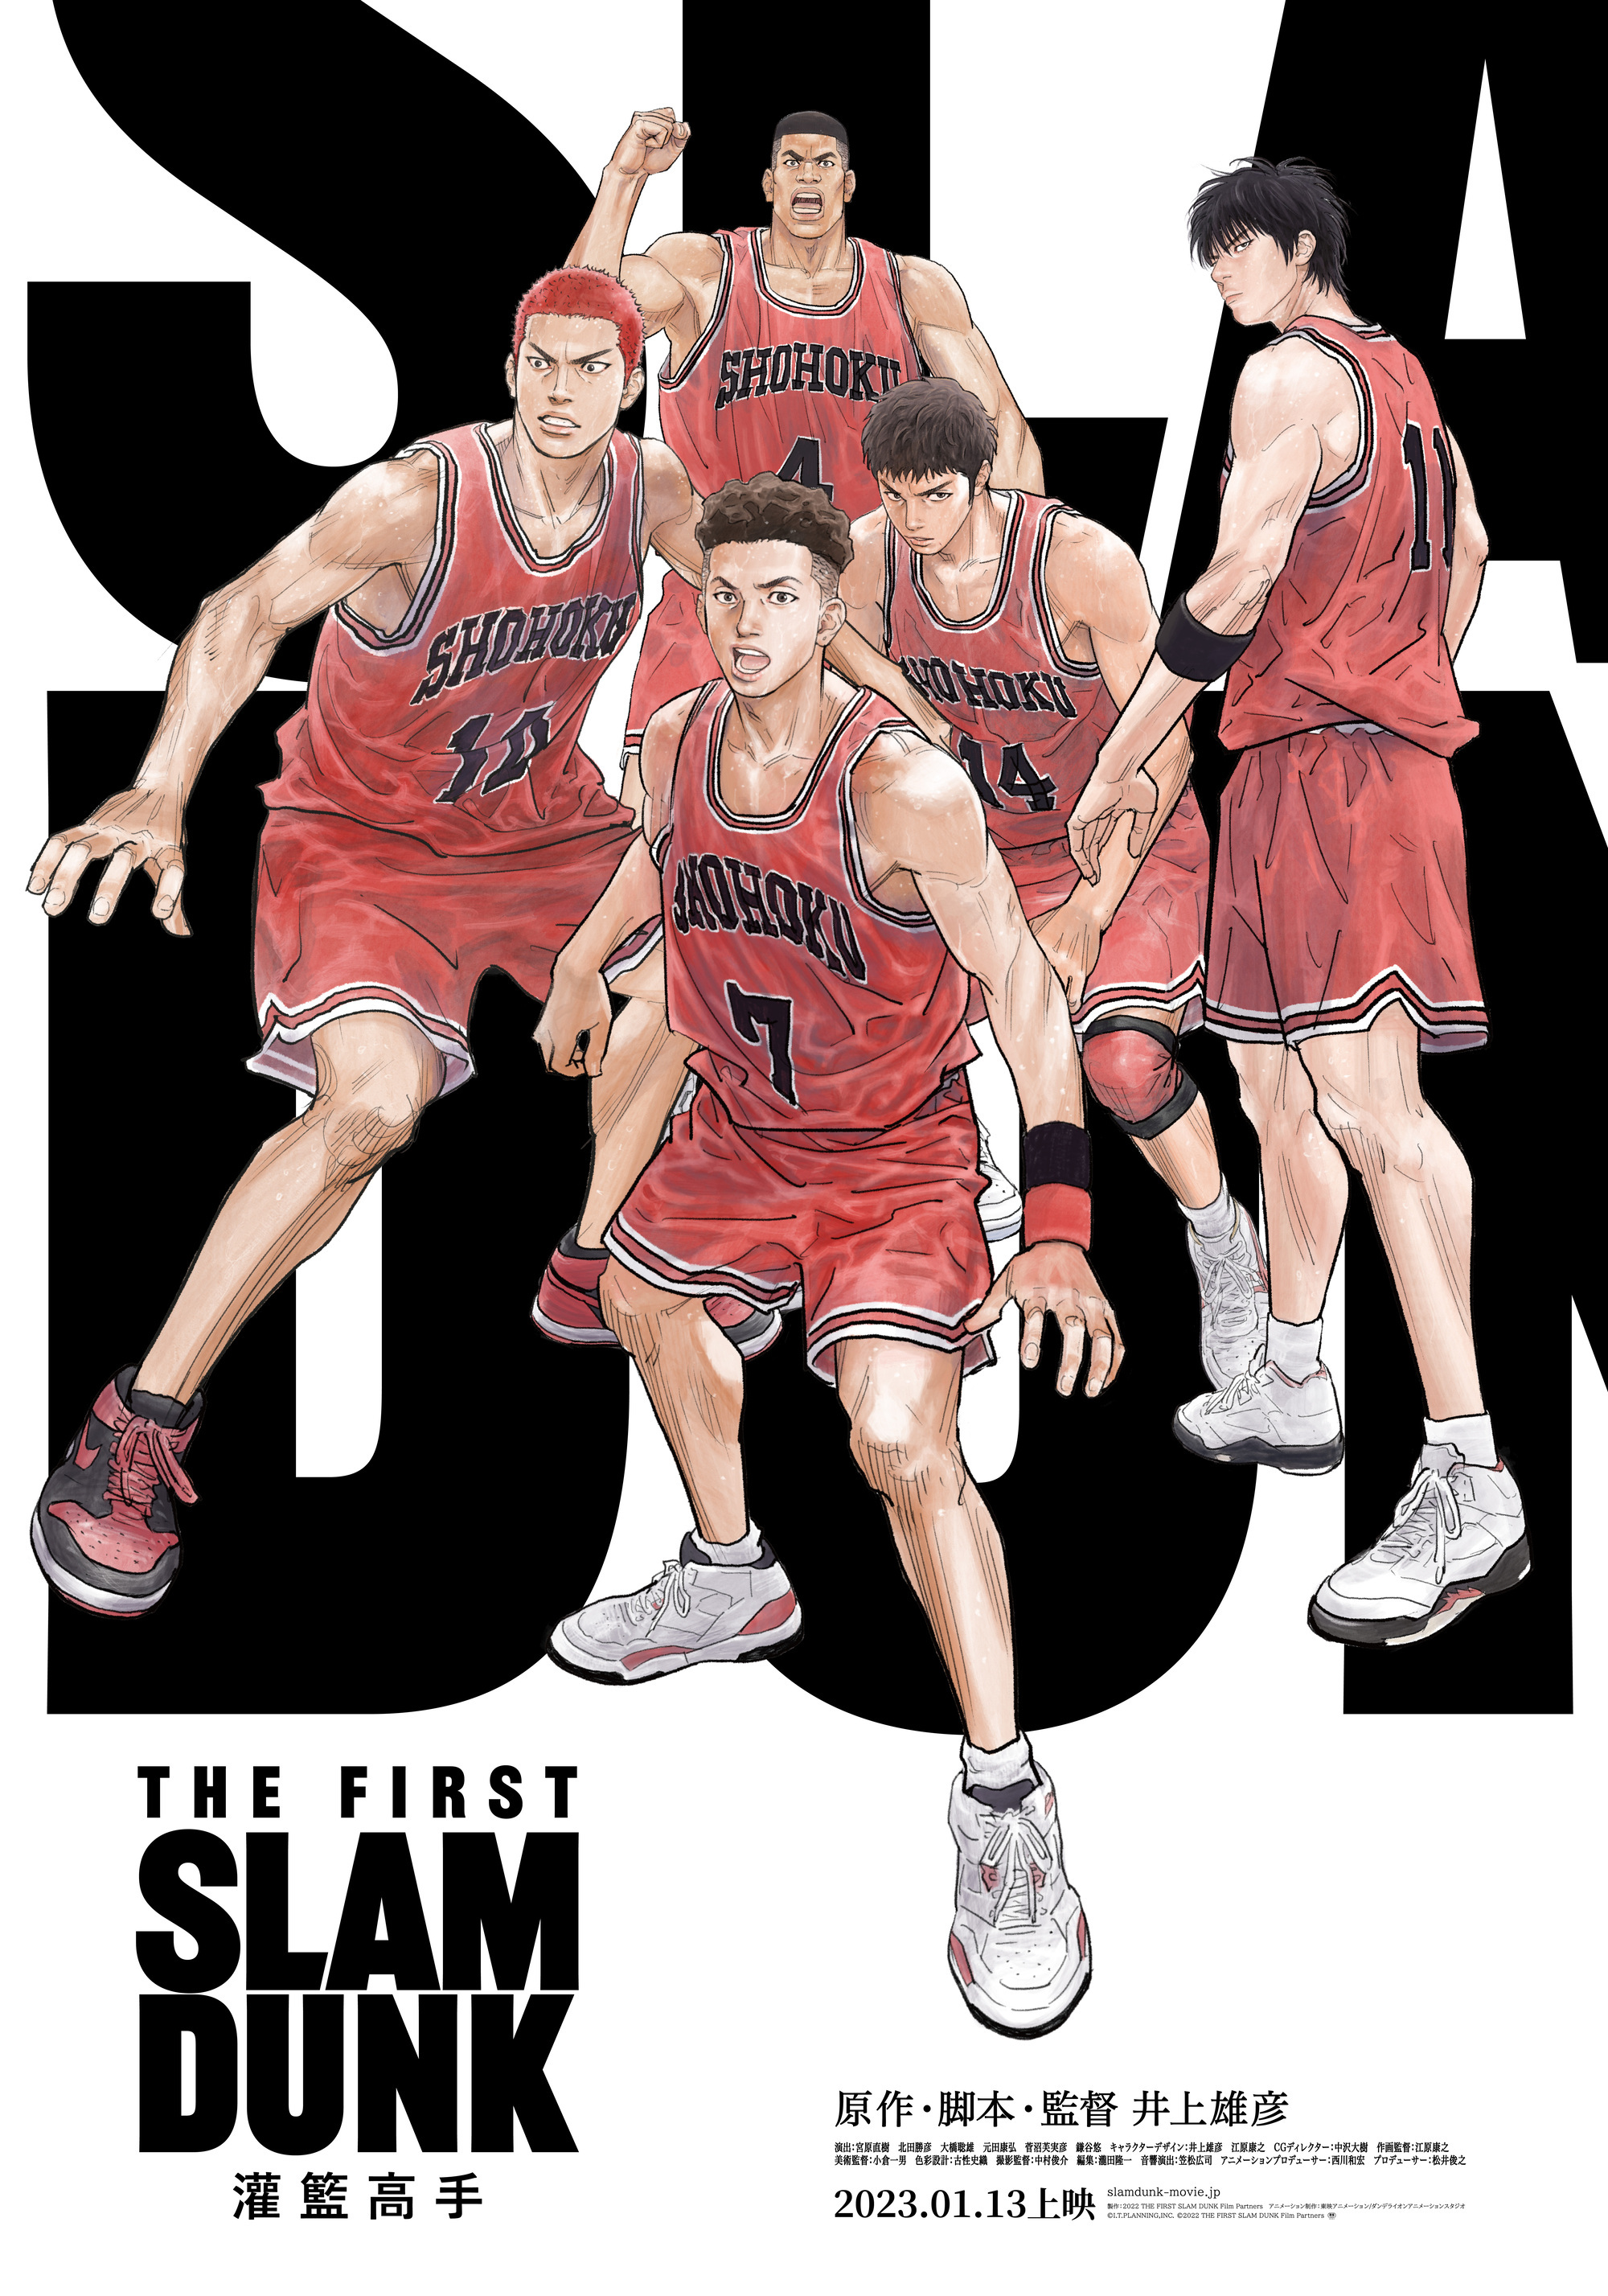 电影《灌篮高手The First Slam Dunk》明天日本上映公开最新30 秒广告插图